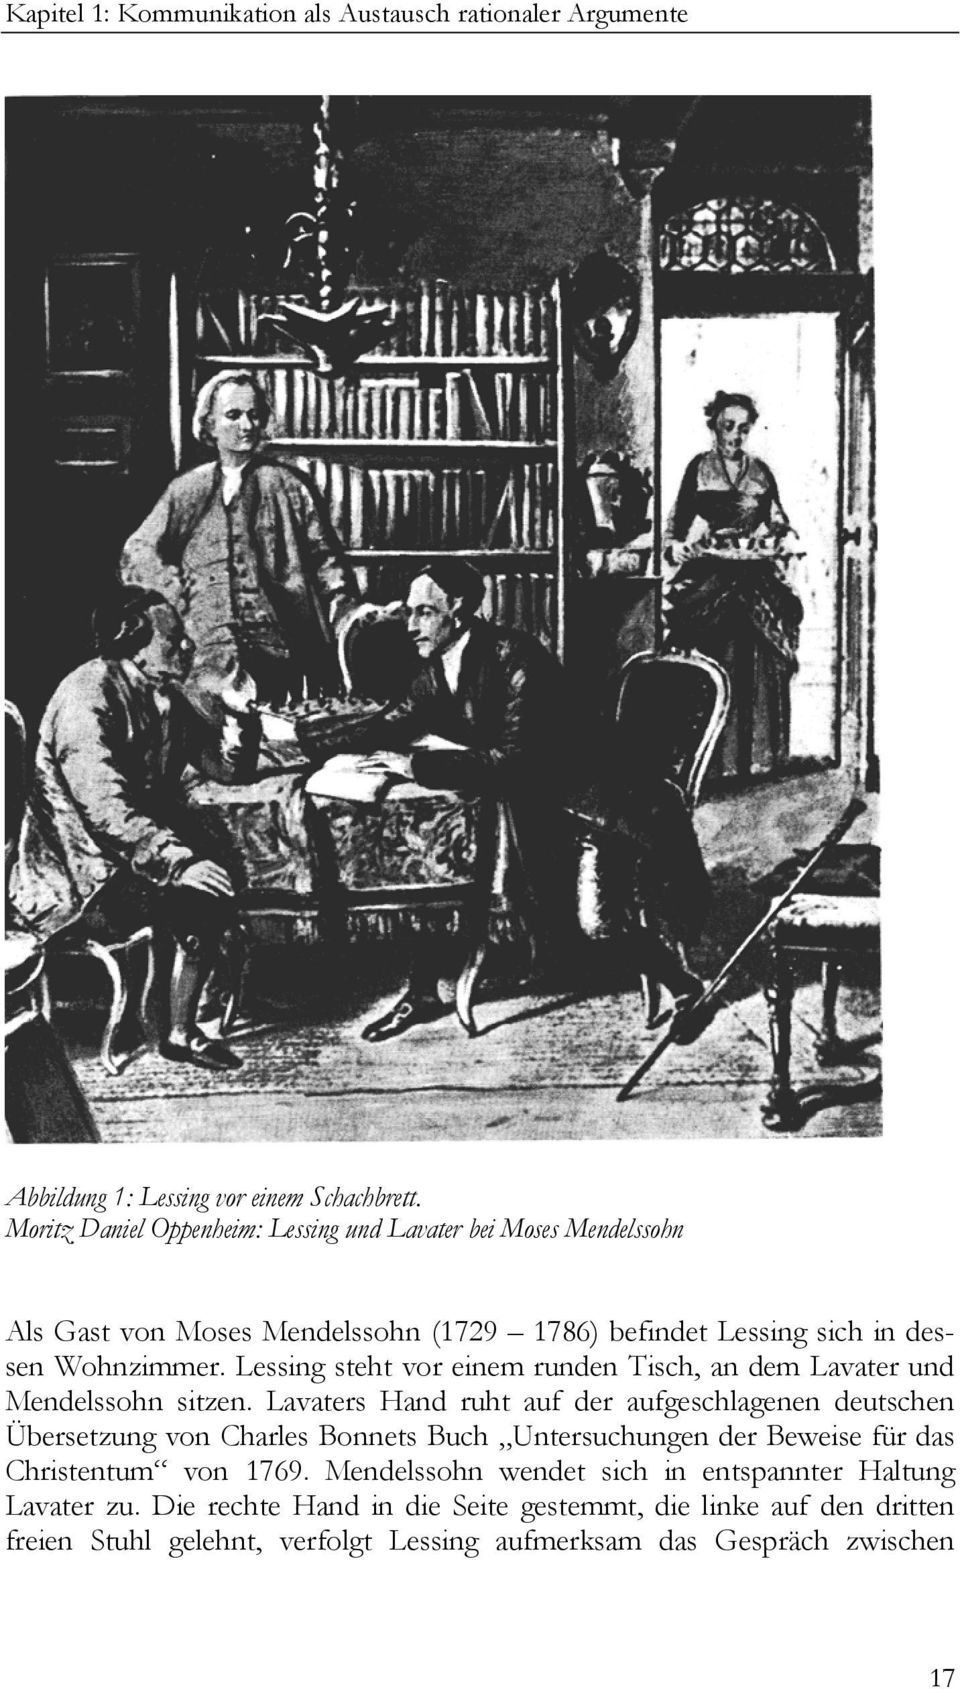 Lessing steht vor einem runden Tisch, an dem Lavater und Mendelssohn sitzen.